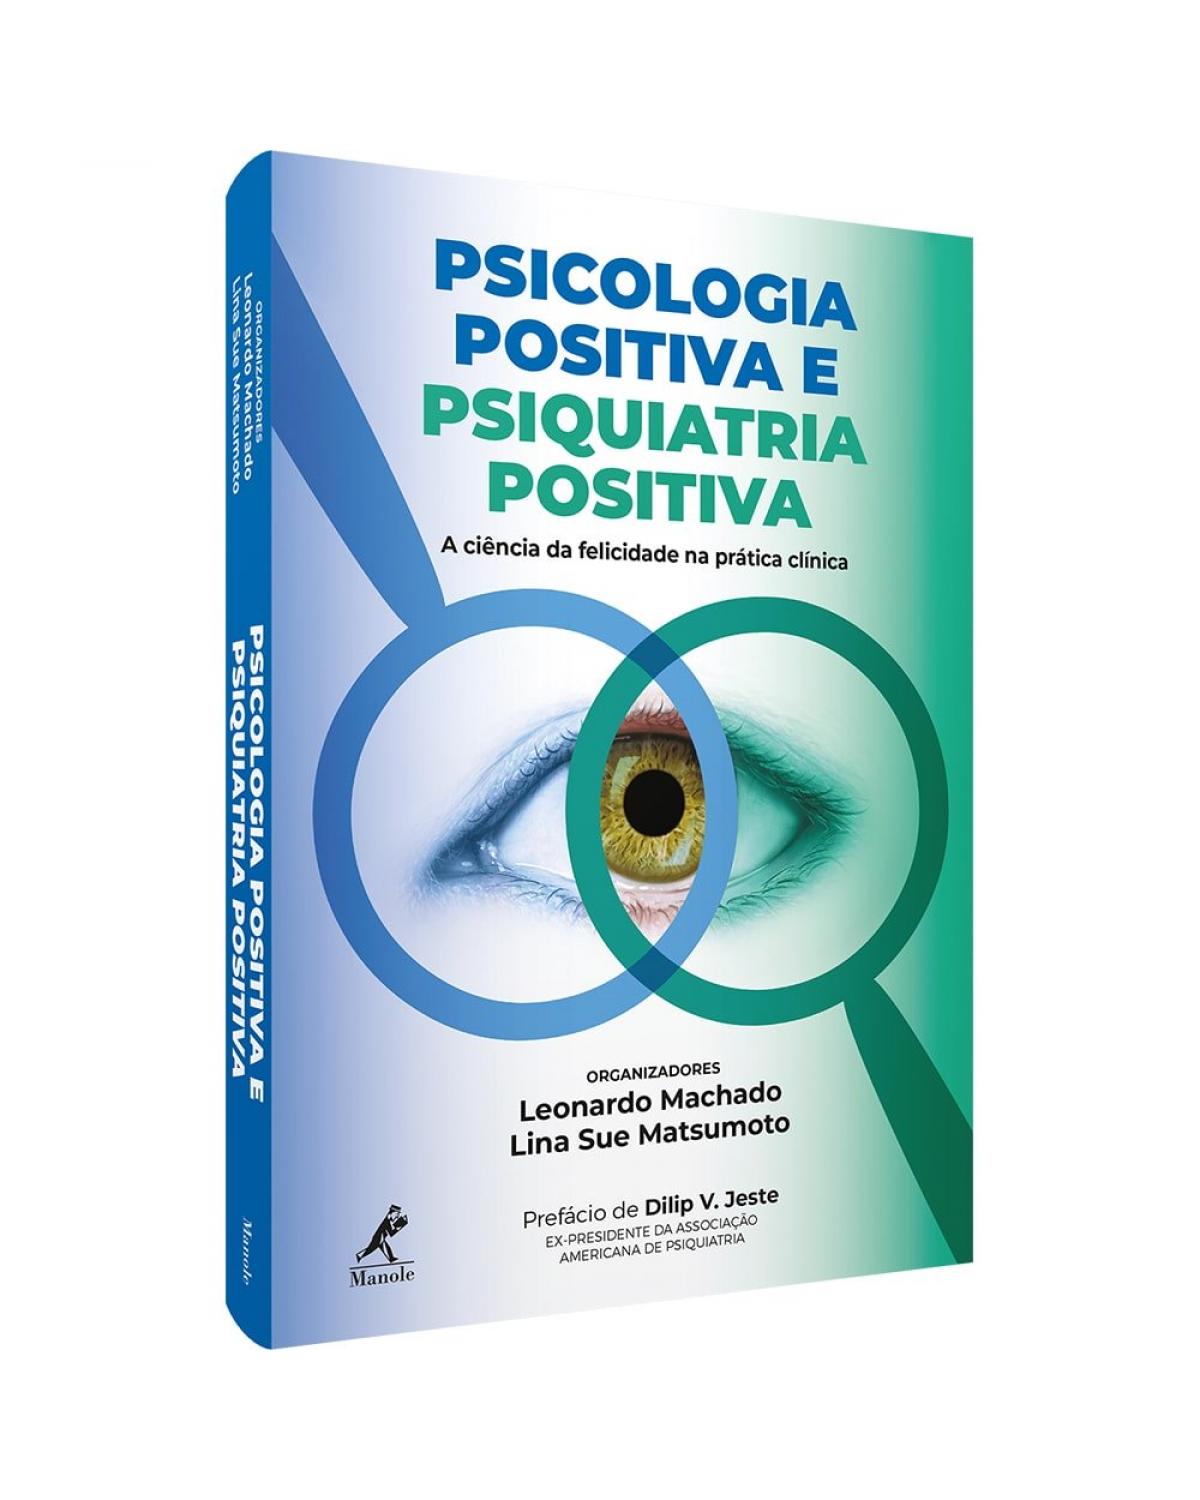 Psicologia positiva e psiquiatria positiva - a ciência da felicidade na prática clínica - 1ª Edição | 2020